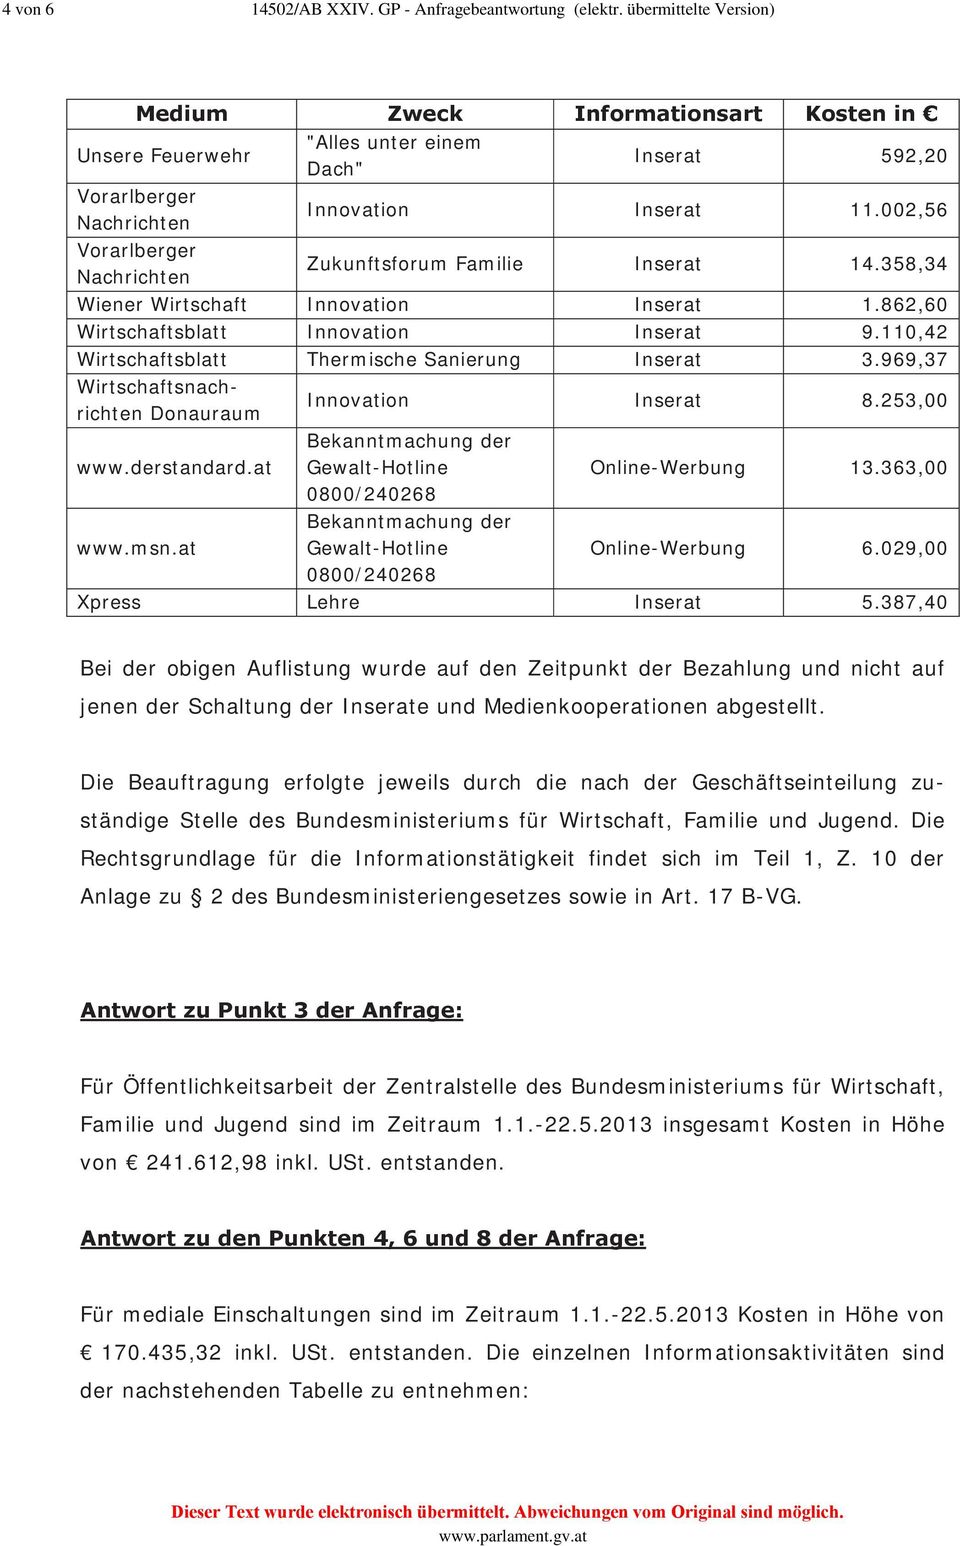 969,37 Wirtschaftsnachrichten Donauraum Innovation Inserat 8.253,00 www.derstandard.at Online-Werbung 13.363,00 www.msn.at Online-Werbung 6.029,00 Xpress Lehre Inserat 5.